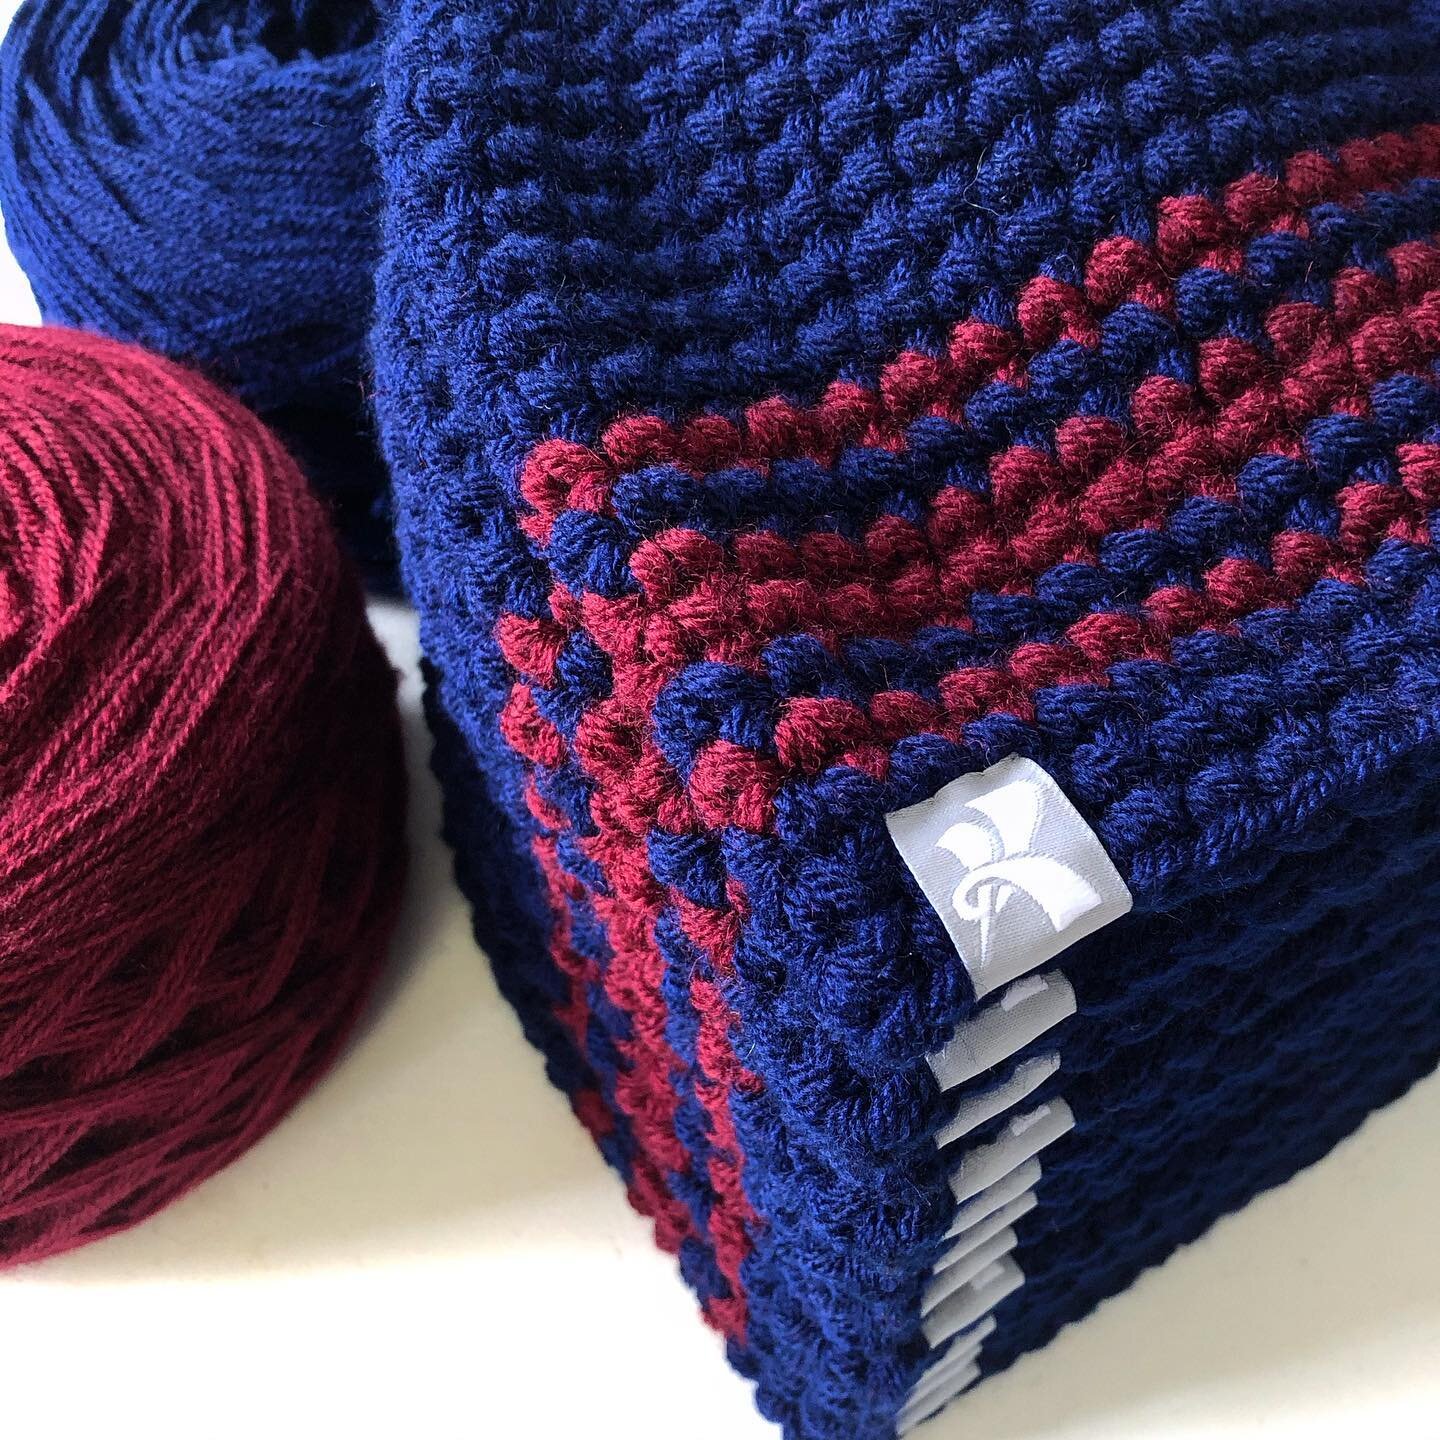 Neat little stack of beans newly tagged up. 

_______________________✍
#designyourown #custombeanies #custom #grouporder #beanies 
#handmade #crochet #branding #wovenlabel #cygnetyarns #winterbeanies#pompom #bobble #skibeanie #maker#crochetgirlgang #